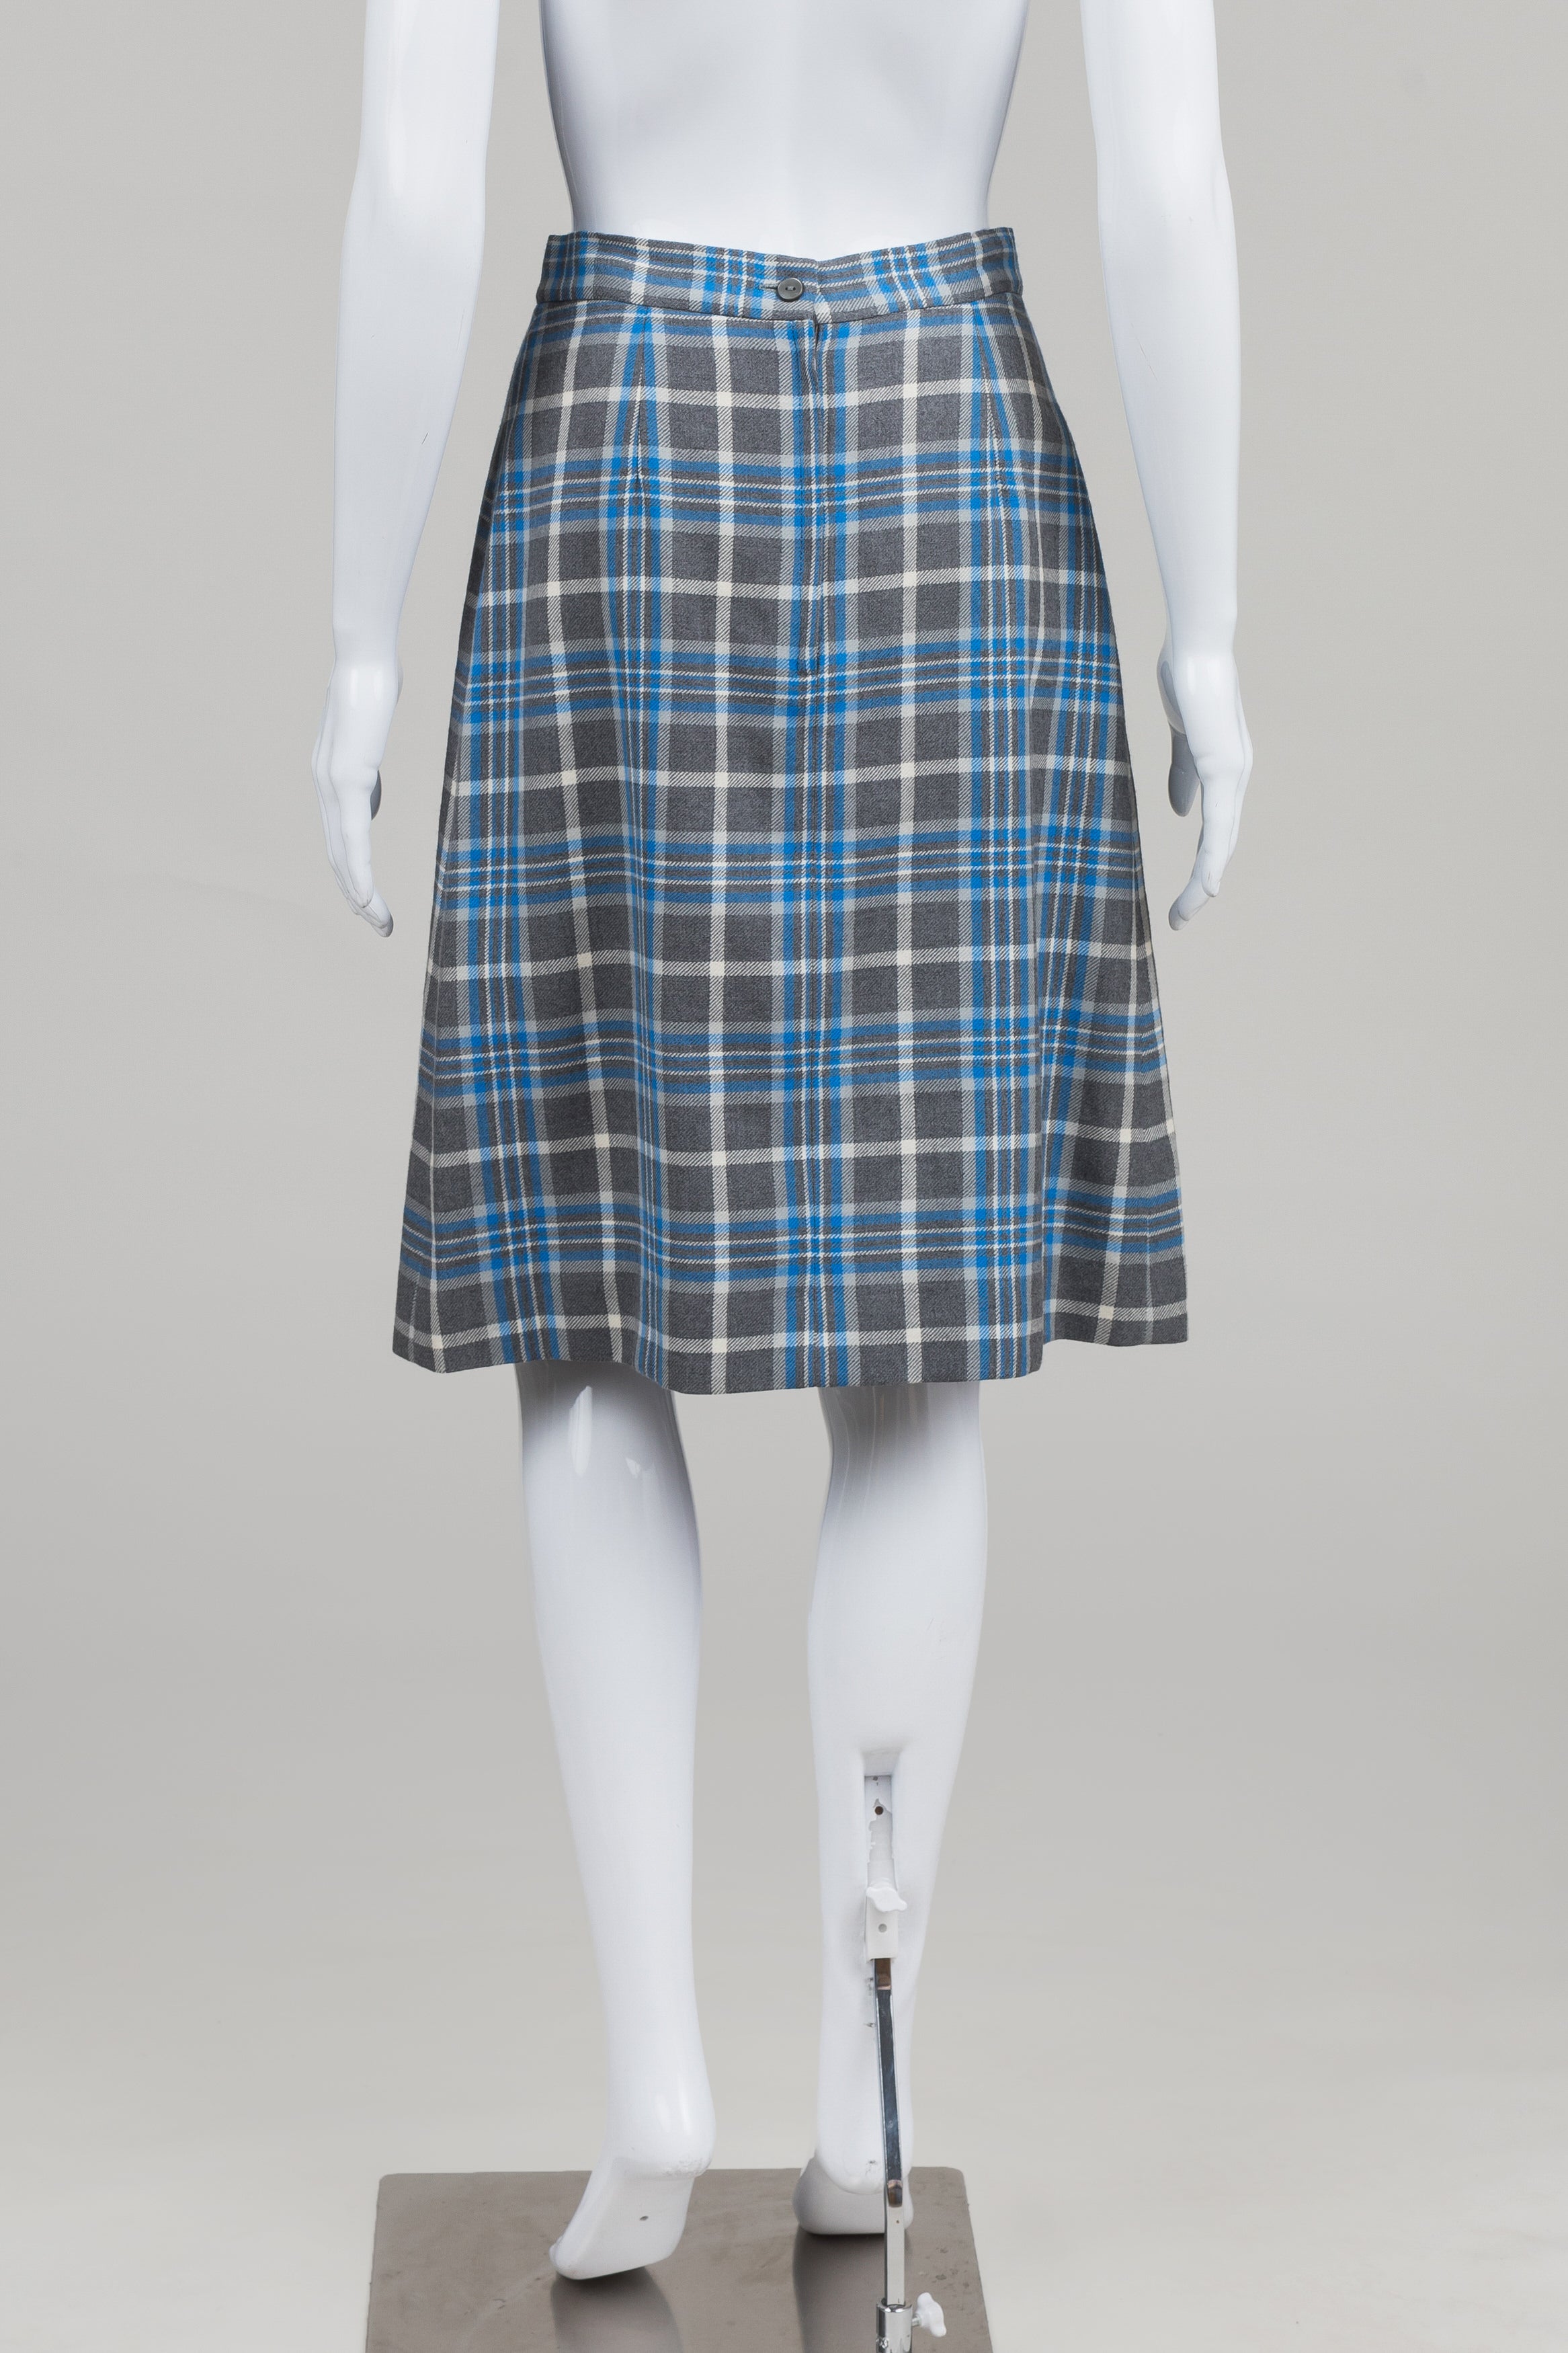 Dalkeith Vintage Grey/Blue Plaid Pleated Skirt (12)